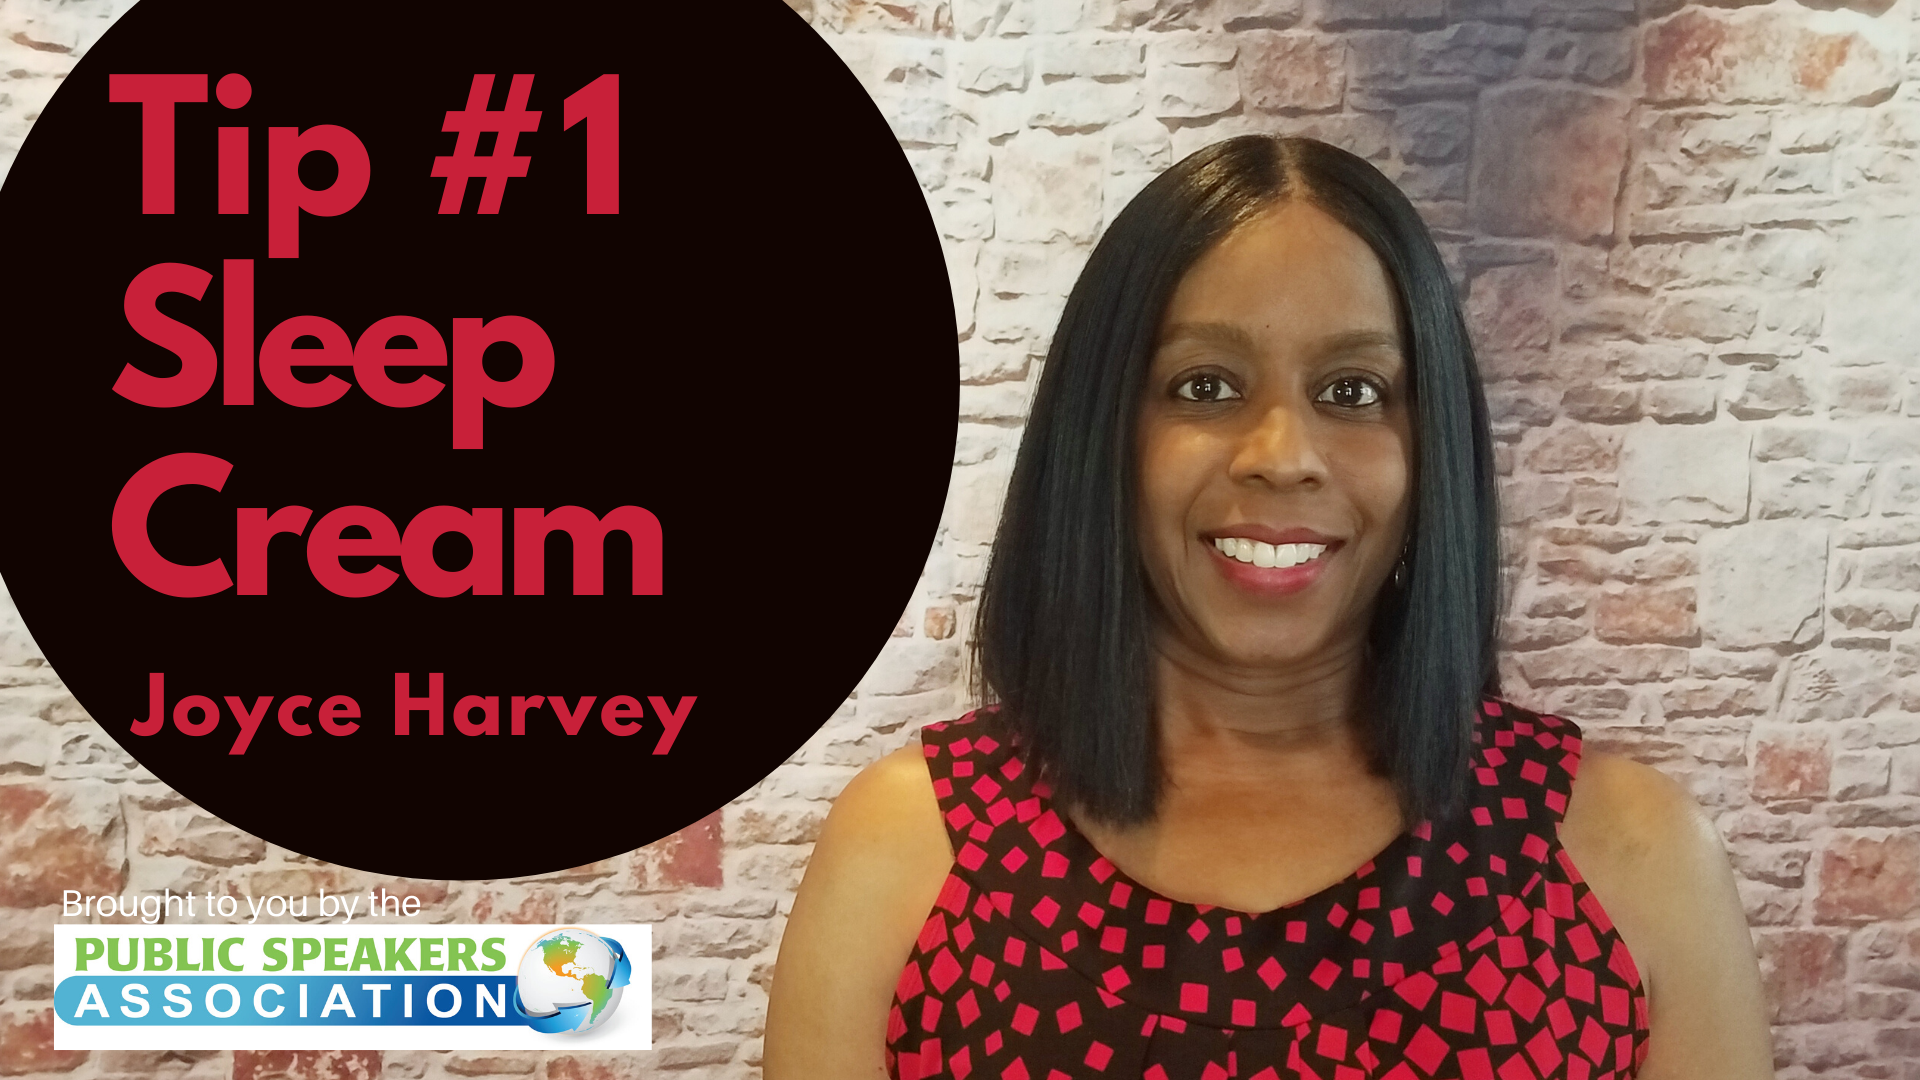 Joyce Harvey – Tip #1 Sleep Cream